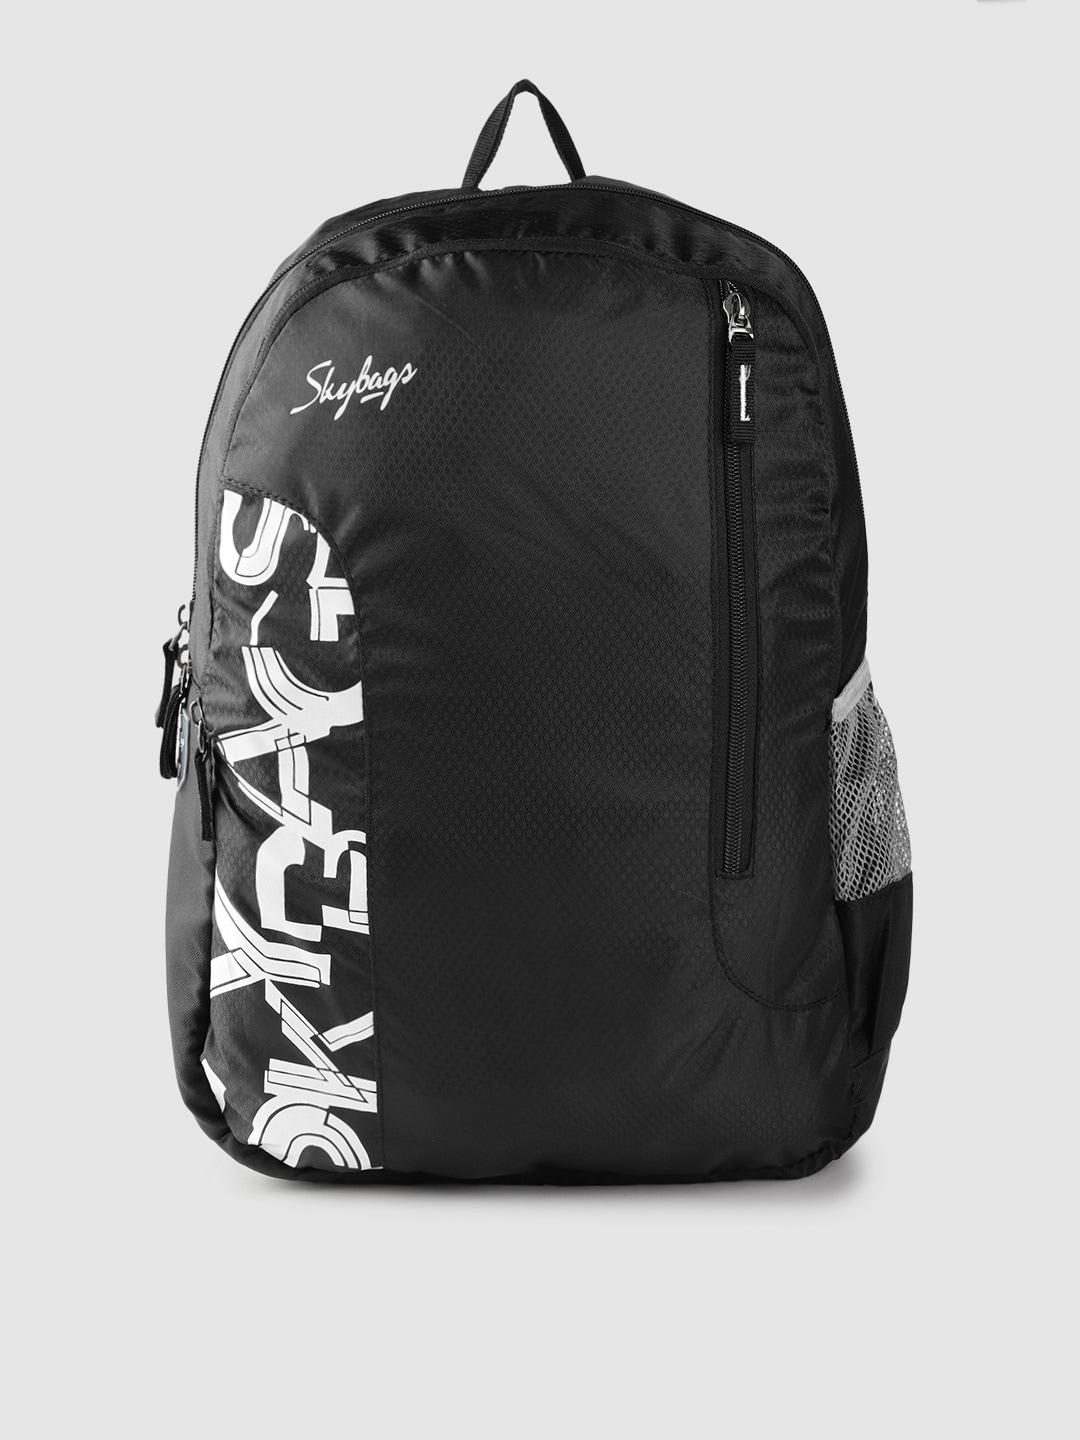 Skybags Unisex Black & White Brand Logo Print Backpack- 21.3 Ltrs